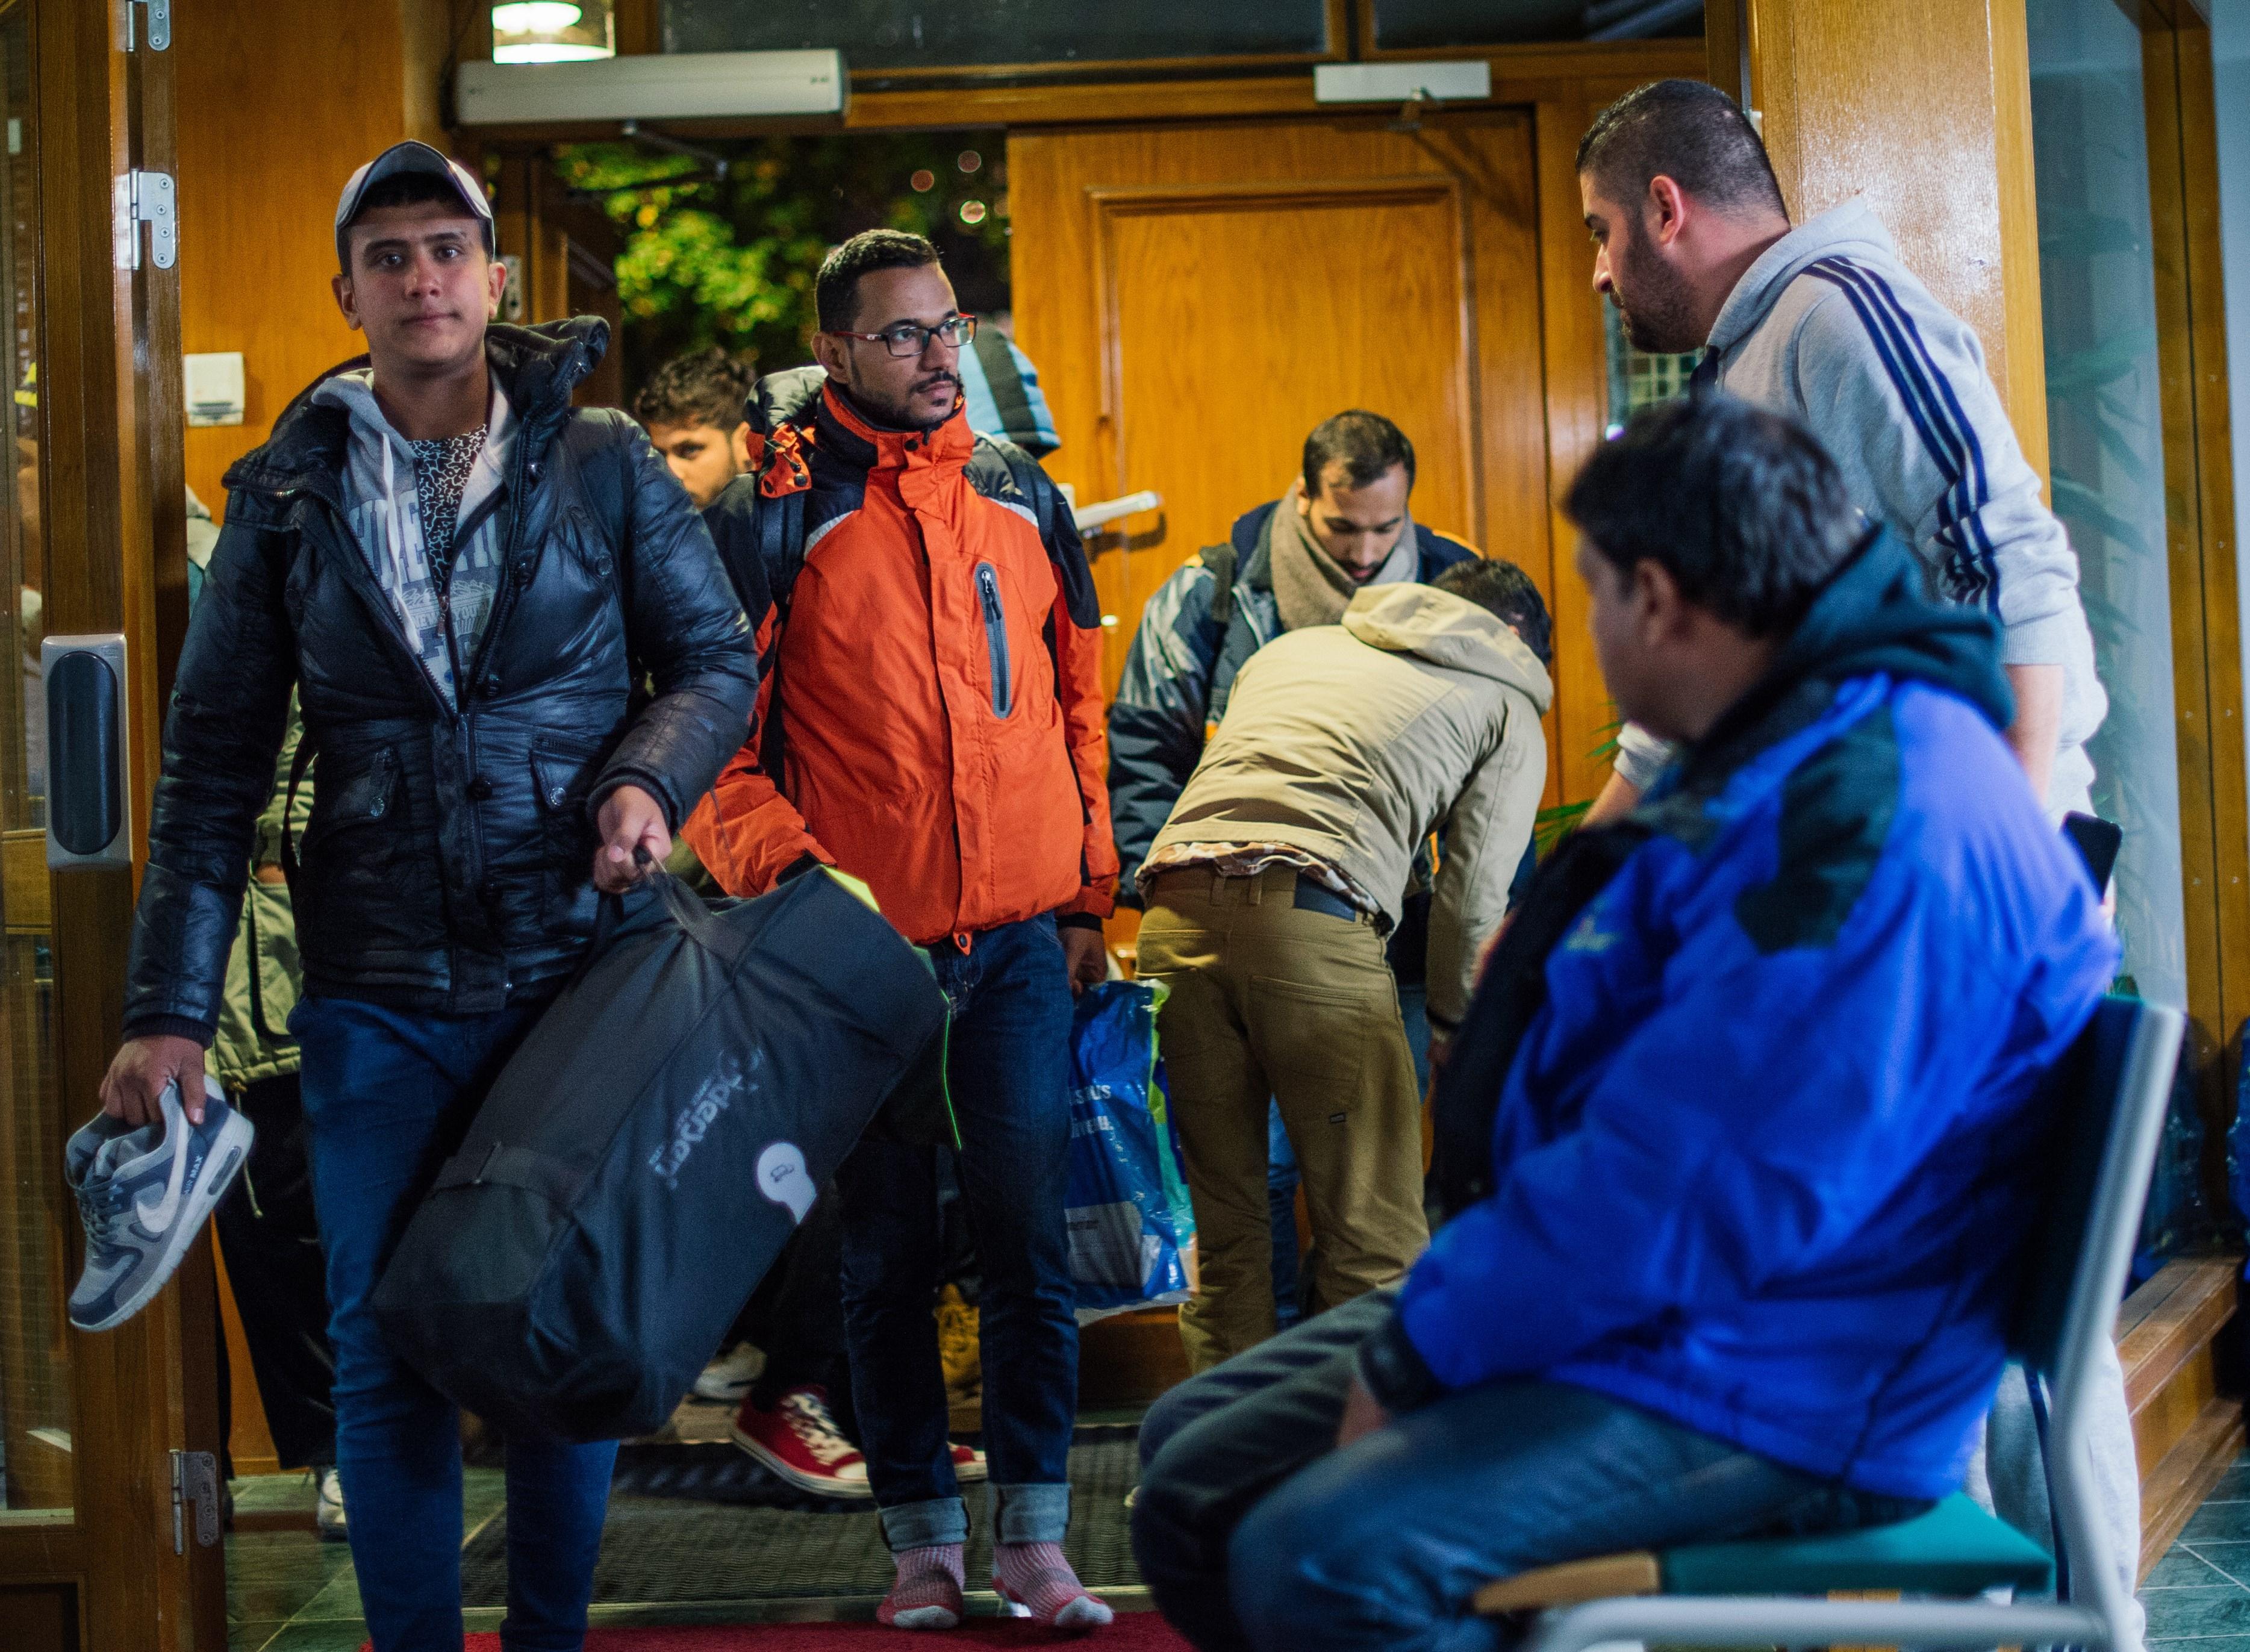 Flyktingar anländer till Stockholms central den 15 oktober 2015. Regeringen planerar nu om budgeten för att kunna täcka kostnader för ökad flyktingmottagning.        (Foto: Jonathan Nackstrand/AFP/Getty Images)